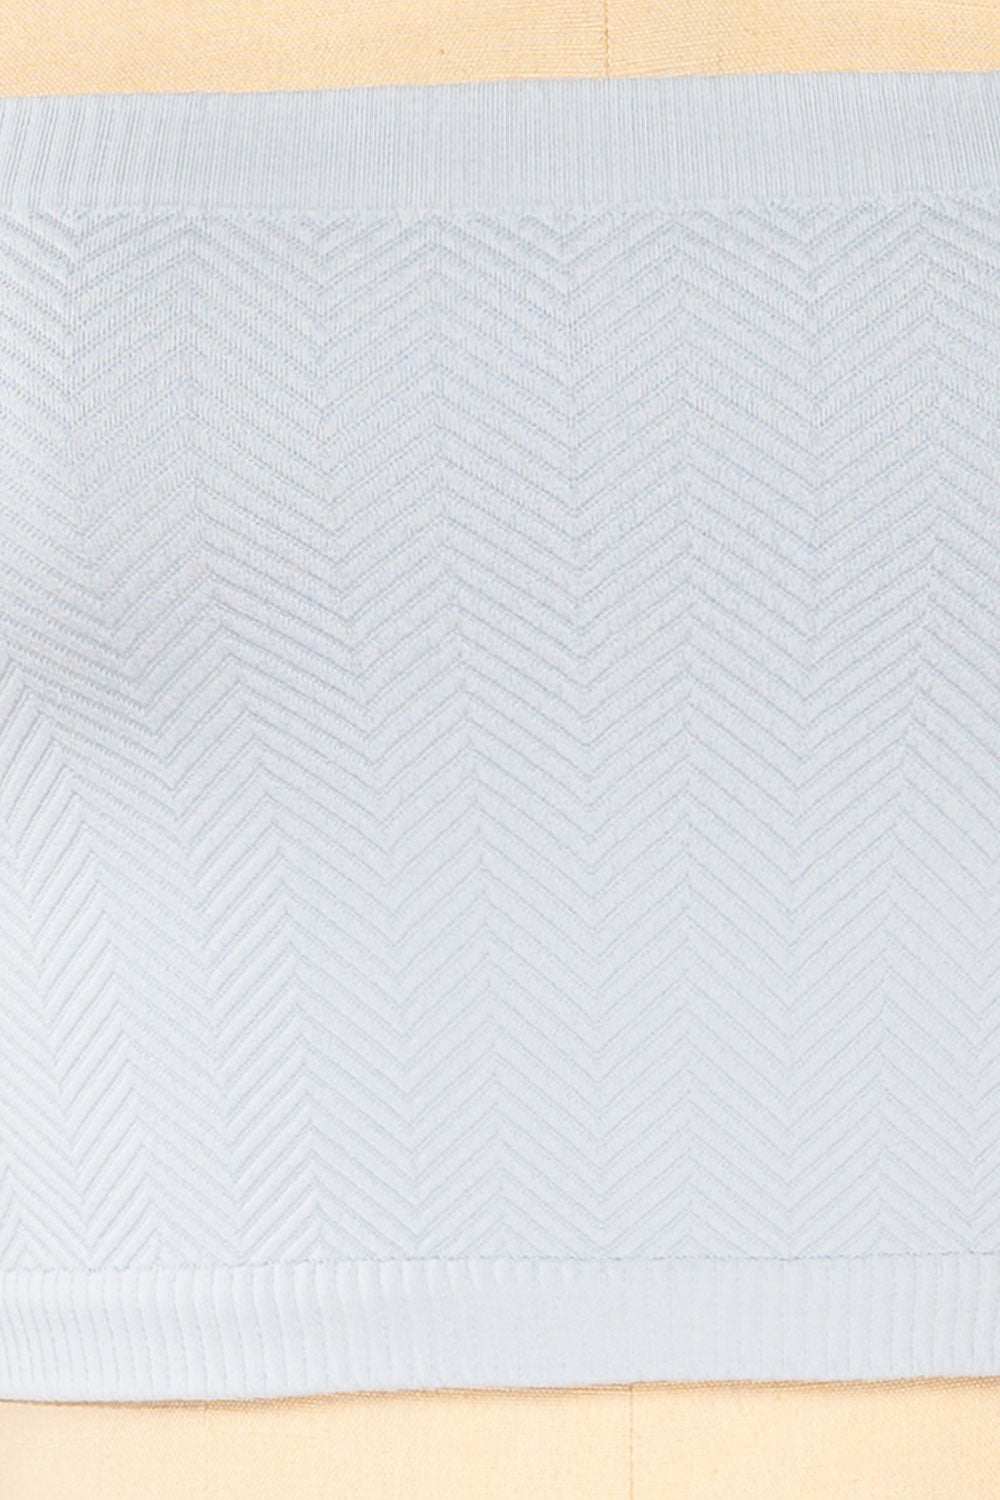 Ator Blue Textured Bandeau Top | La petite garçonne fabric  fabric 